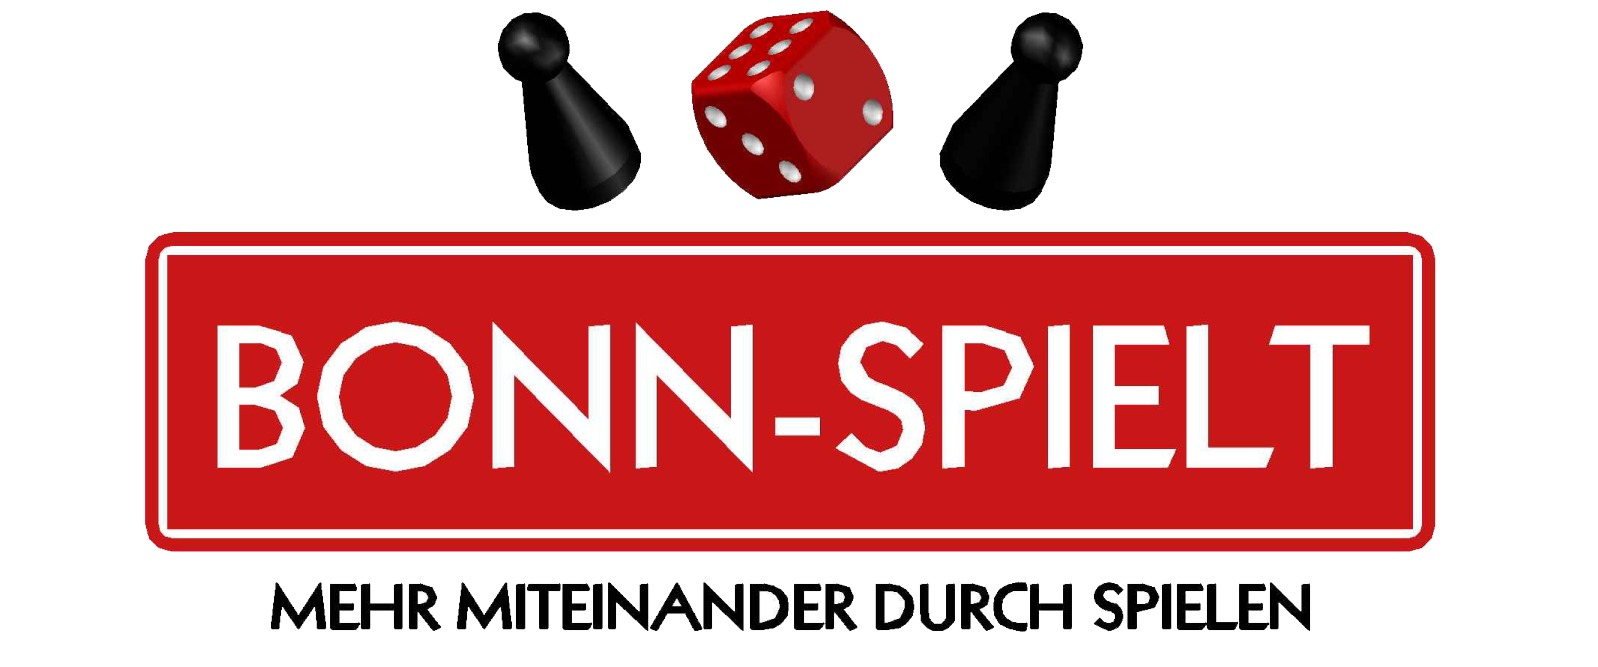 BONN-SPIELT 2019